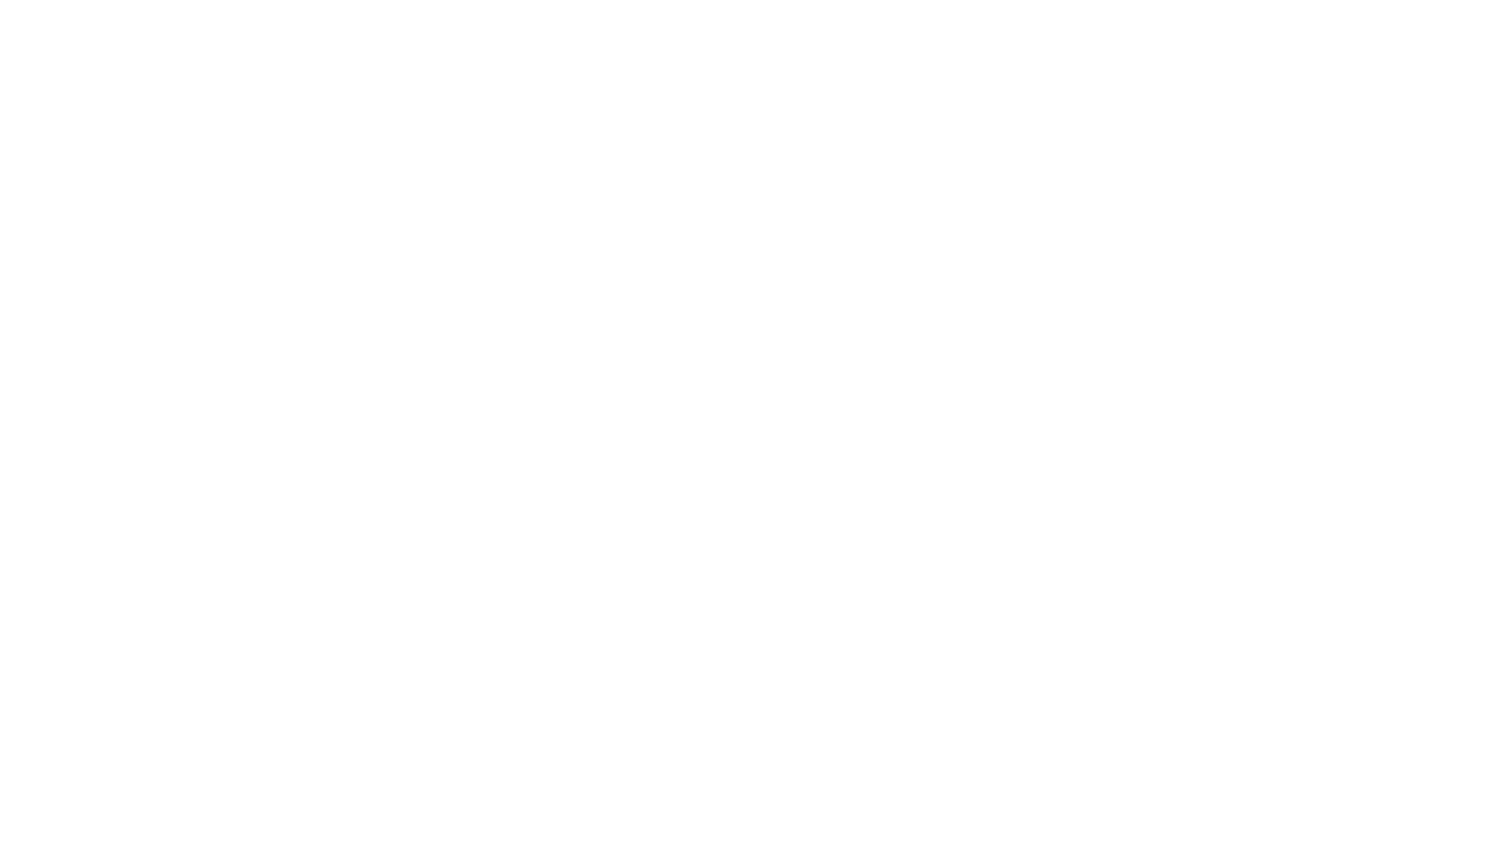 Talor Stone Photography